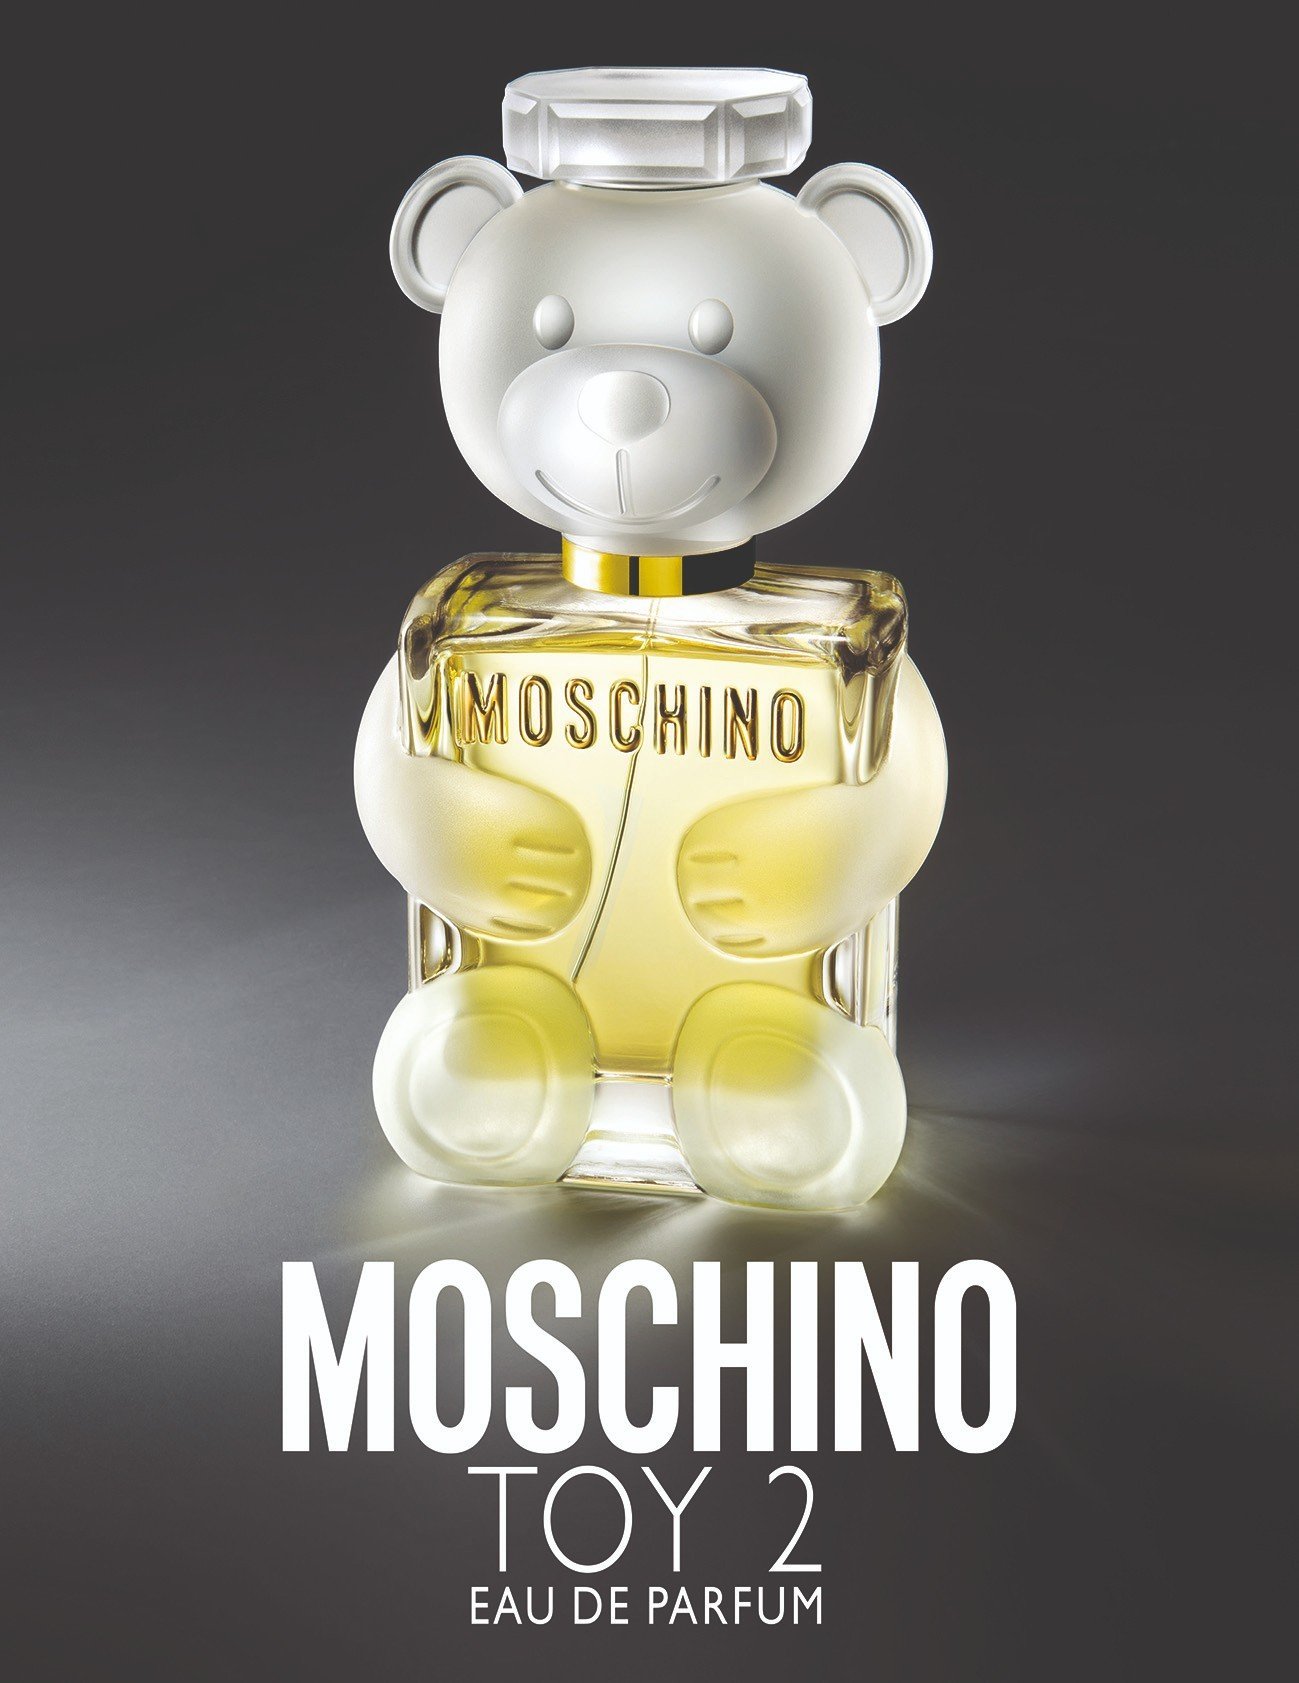 Moschino Toy Collection nước hoa Moschino Toy Collection AH Perfumes nước hoa AH Perfumes 1 Chế tác tinh nghịch mang dấu ấn độc đáo với Moschino Toy Collection